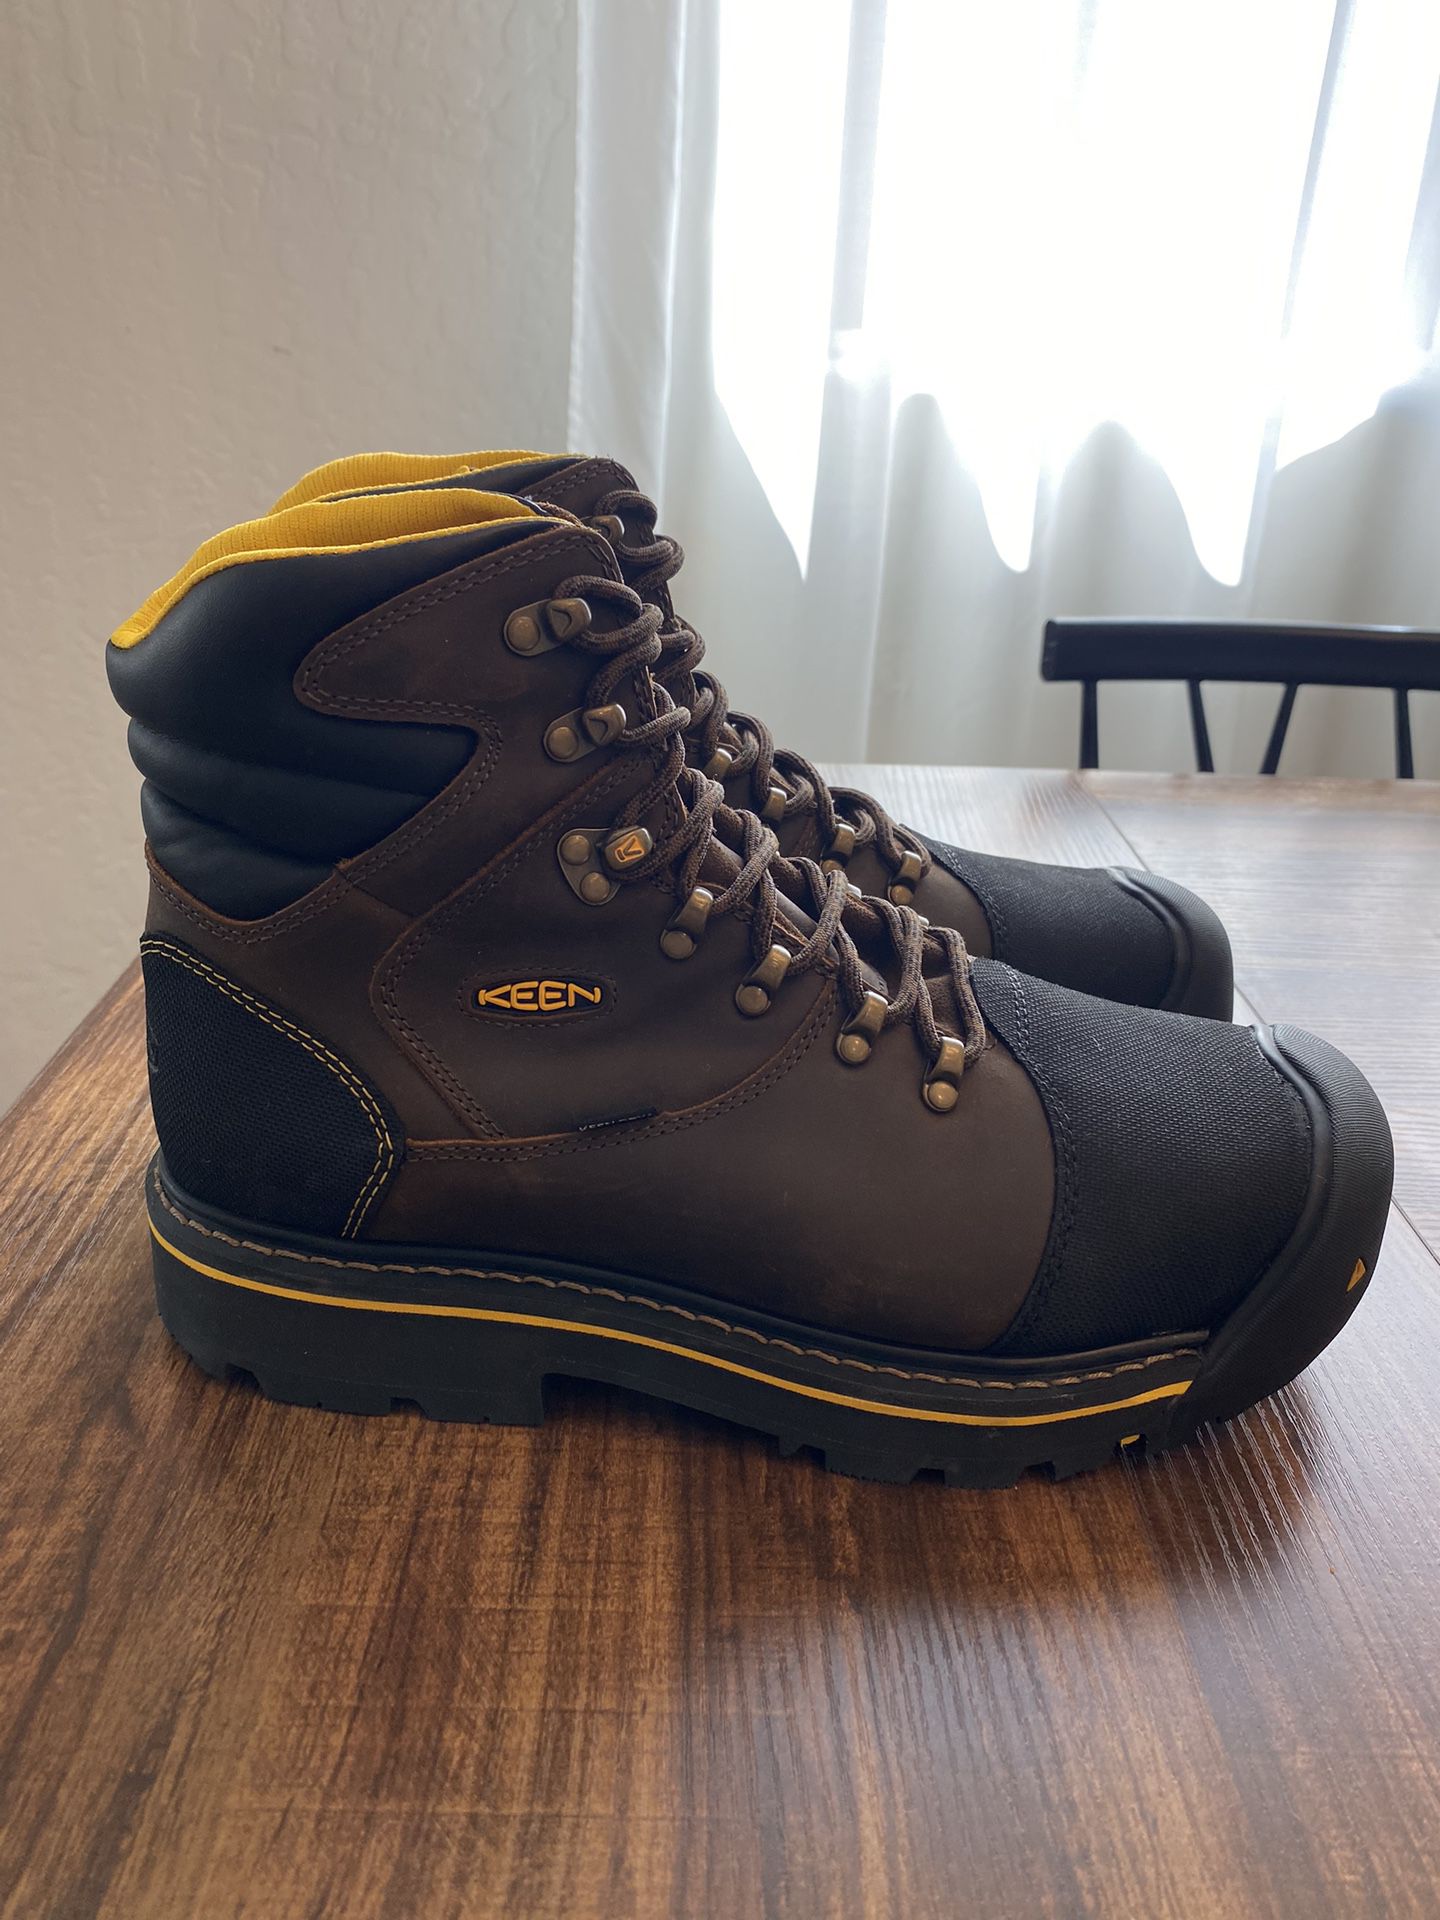 Keen Waterproof Steel Toe Work Boots (Size 12D)